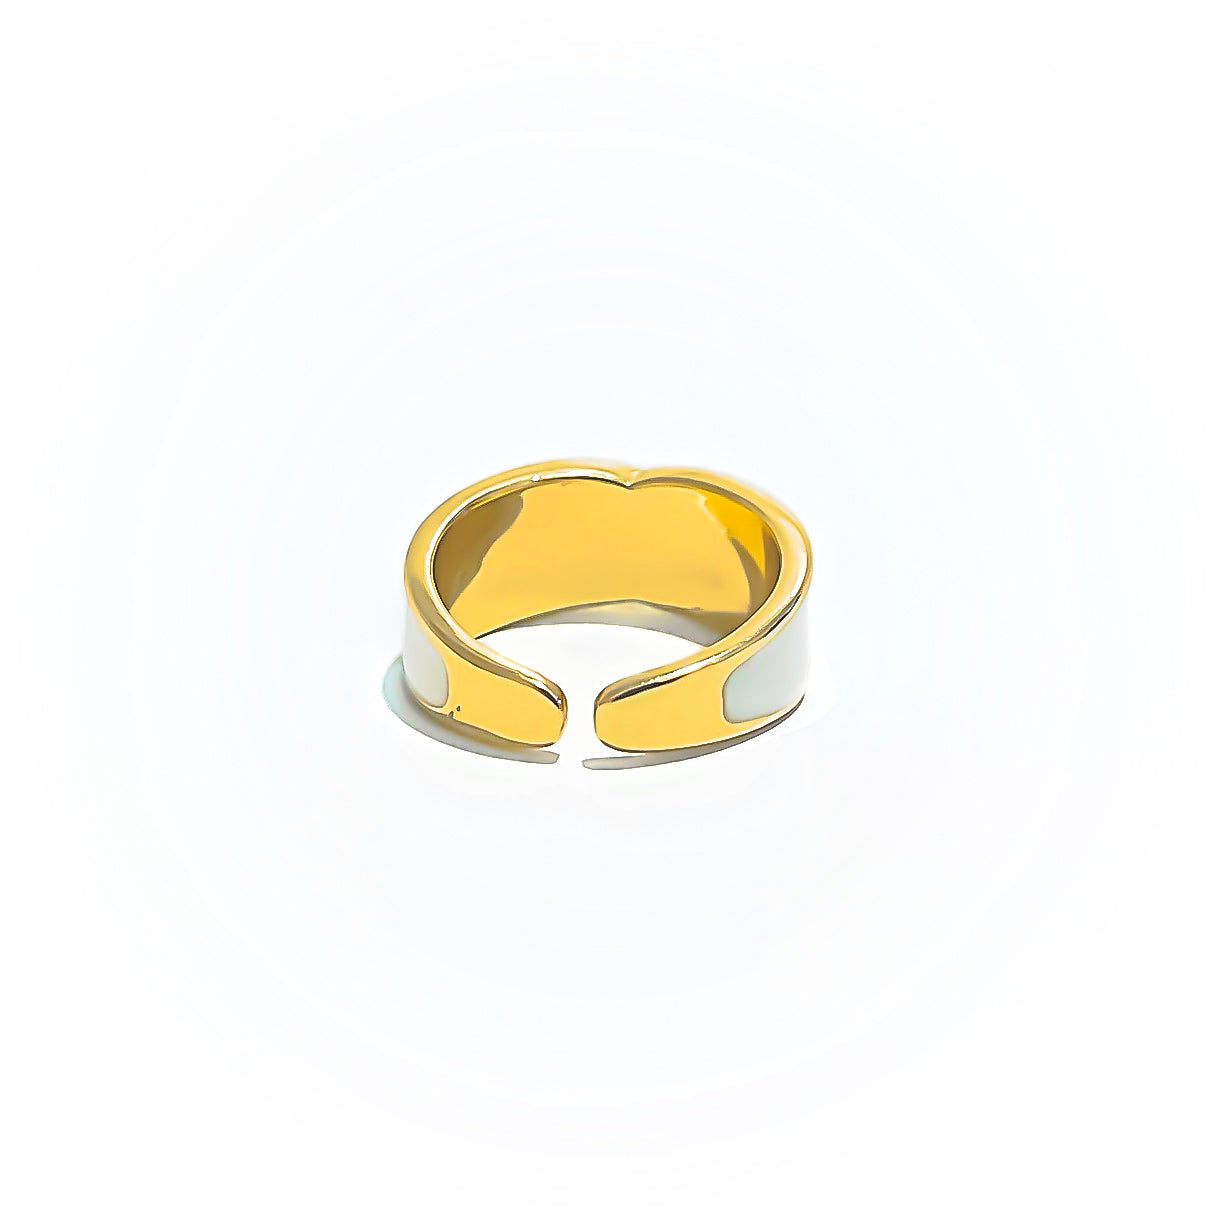    joya-anillo-con-significado-bano-de-oro-turco-1